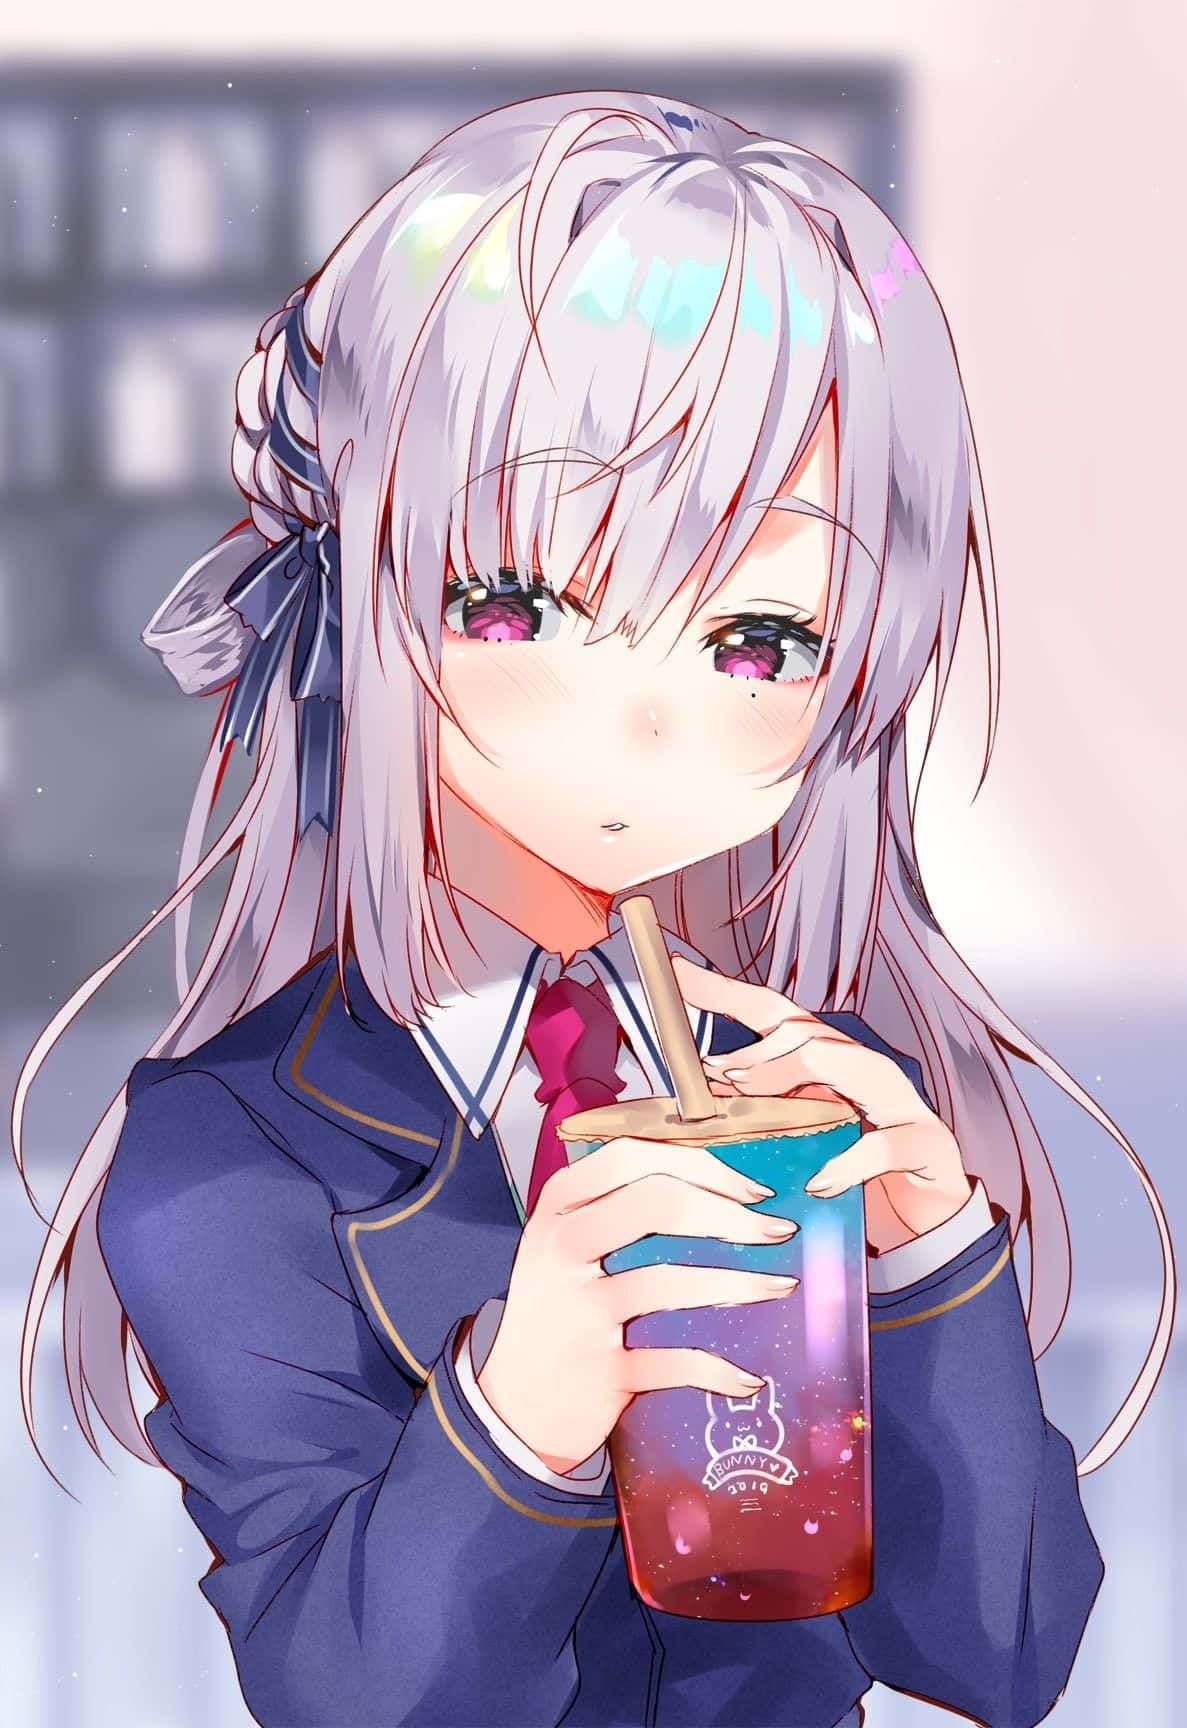 Anime uống trà sữa trong hình ảnh này đang rất thú vị và đáng yêu. Bạn sẽ cảm thấy như được ươm mầm cùng cô bạn anime quyến rũ, tận hưởng vị ngọt thơm của trà sữa và cảm nhận được nét đẹp của nghệ thuật anime thông qua hình ảnh này.